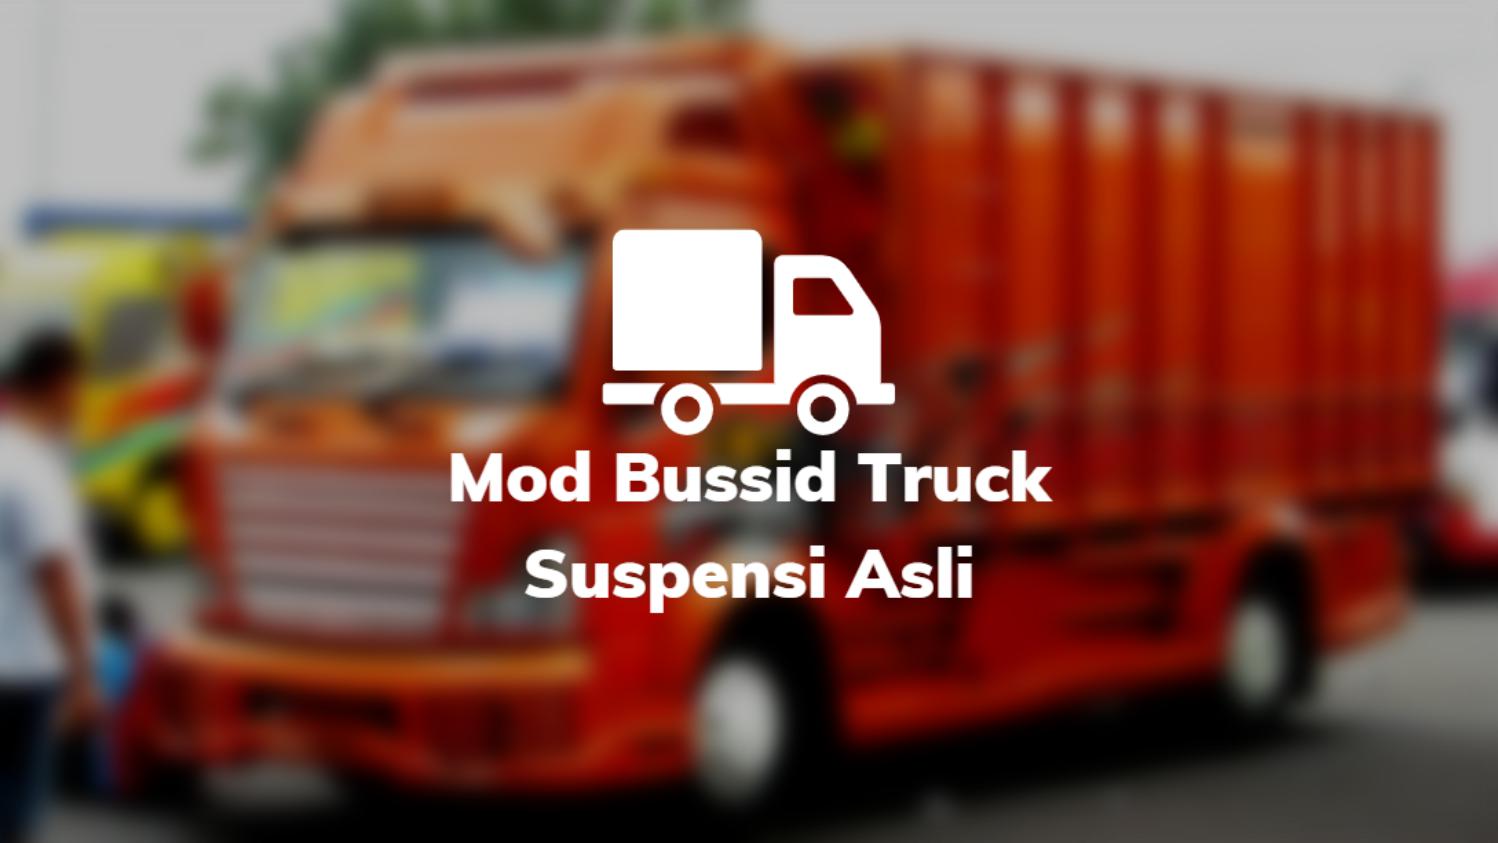 Download Mod Truck Oleng Bussid. √ 9+ Download Mod Bussid Truck Suspensi Asli Untuk Oleng